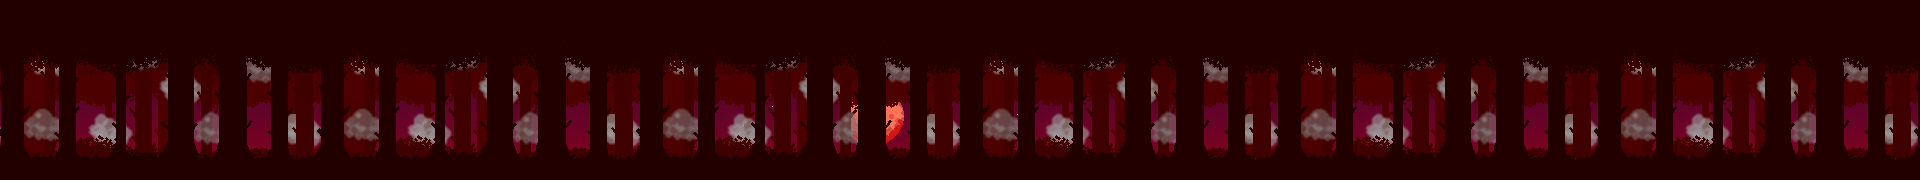 Dark Red Forest: Parallax Background